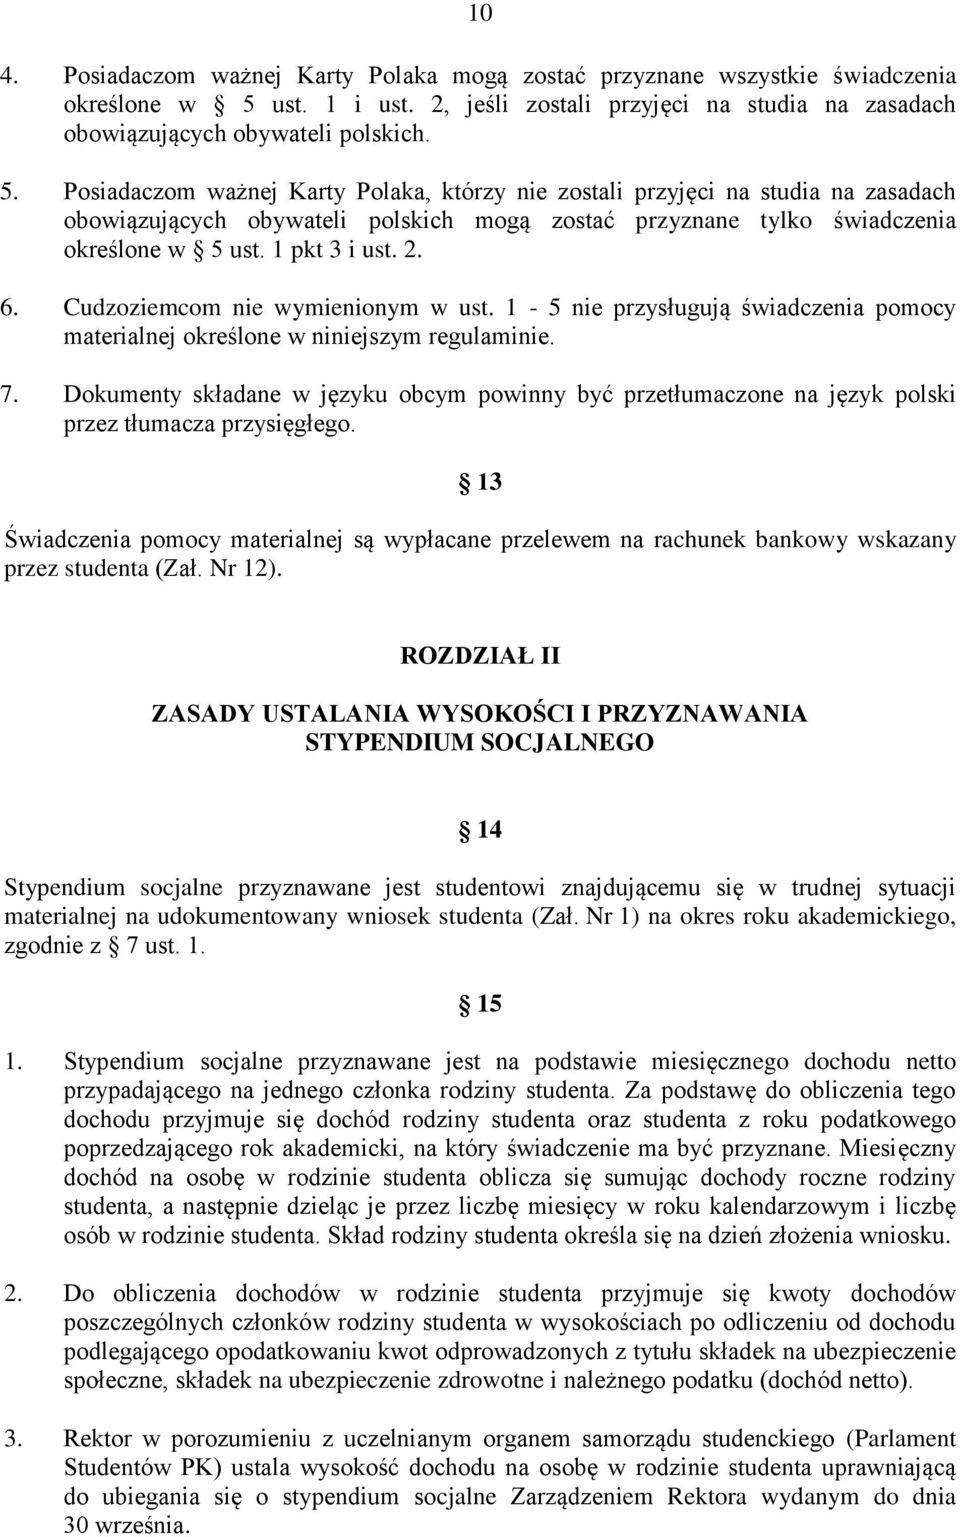 Posiadaczom ważnej Karty Polaka, którzy nie zostali przyjęci na studia na zasadach obowiązujących obywateli polskich mogą zostać przyznane tylko świadczenia określone w 5 ust. 1 pkt 3 i ust. 2. 6.